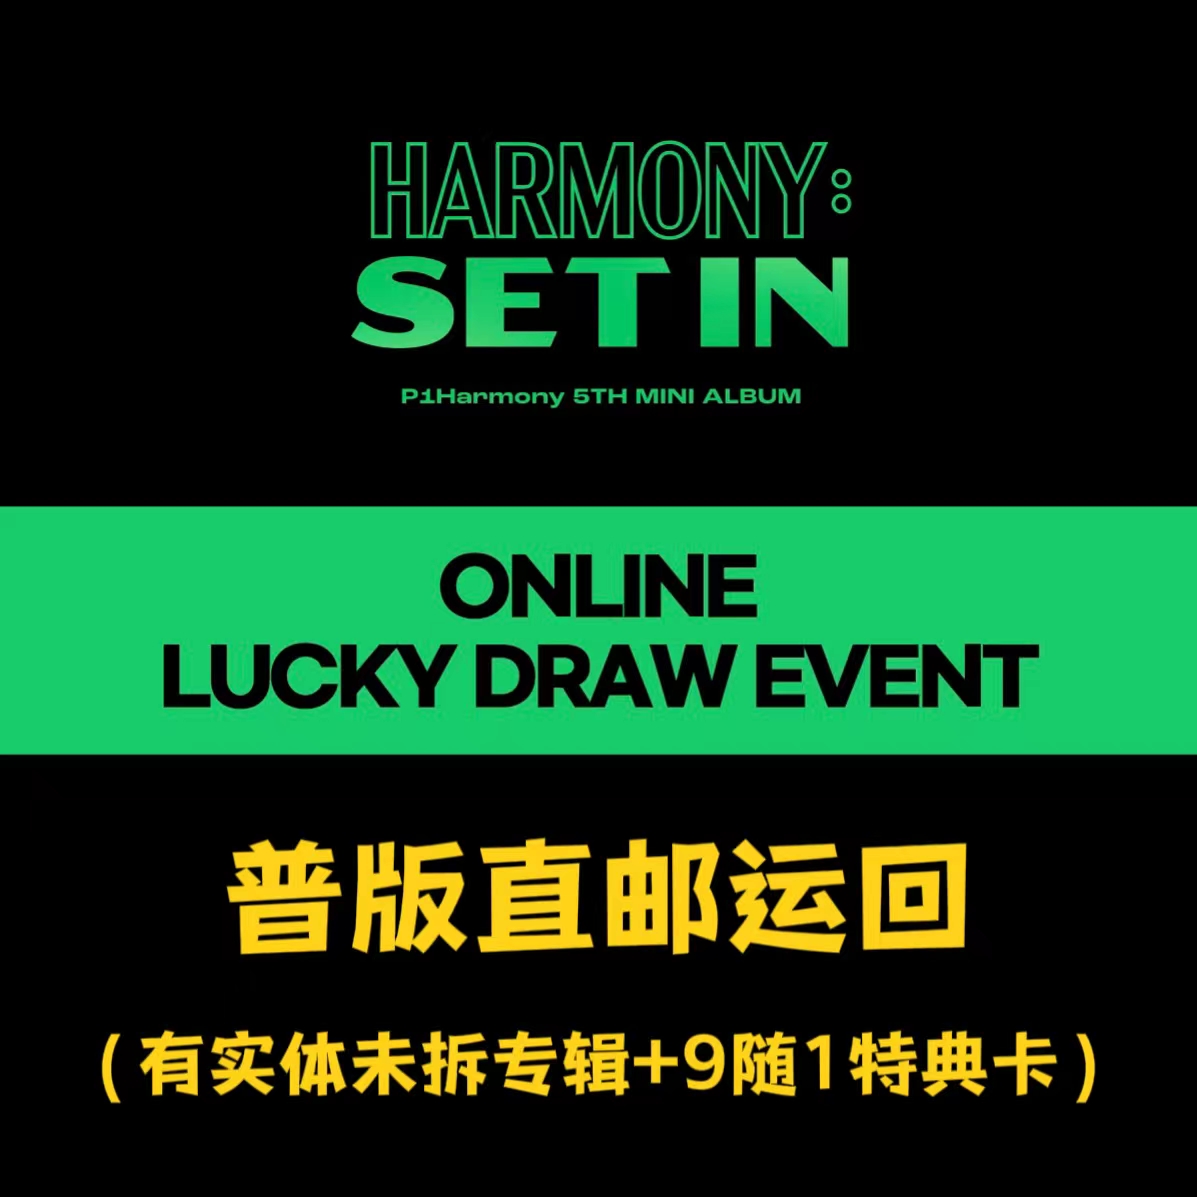 [全款 裸专][Online Lucky Draw Event] [3CD 套装] P1Harmony - 迷你5辑 [HARMONY : SET IN] (SET IN Ver. + STEP IN Ver. + GROW IN Ver.) **不能退款**_Wildness_尹起昊DareU